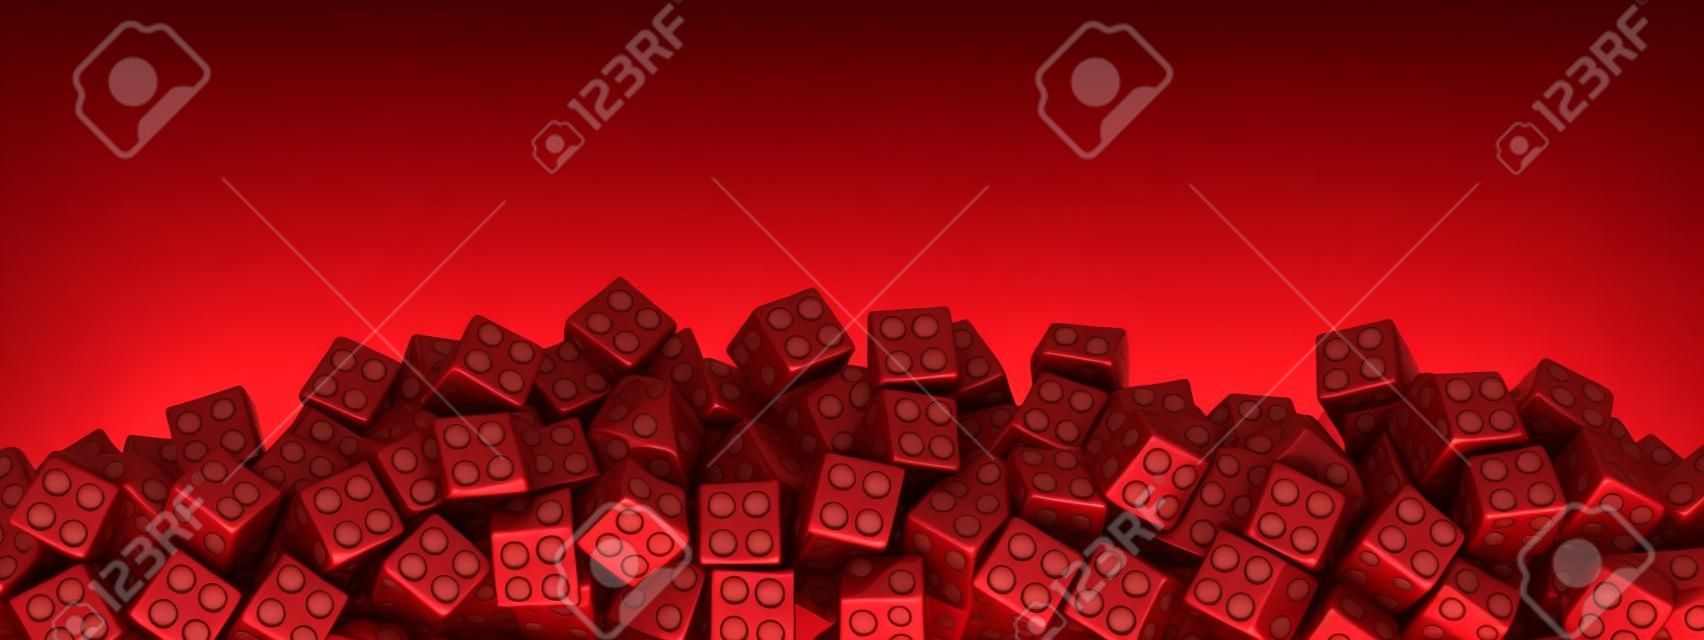 Kırmızı indirim küpleri. 3D illüstrasyon.